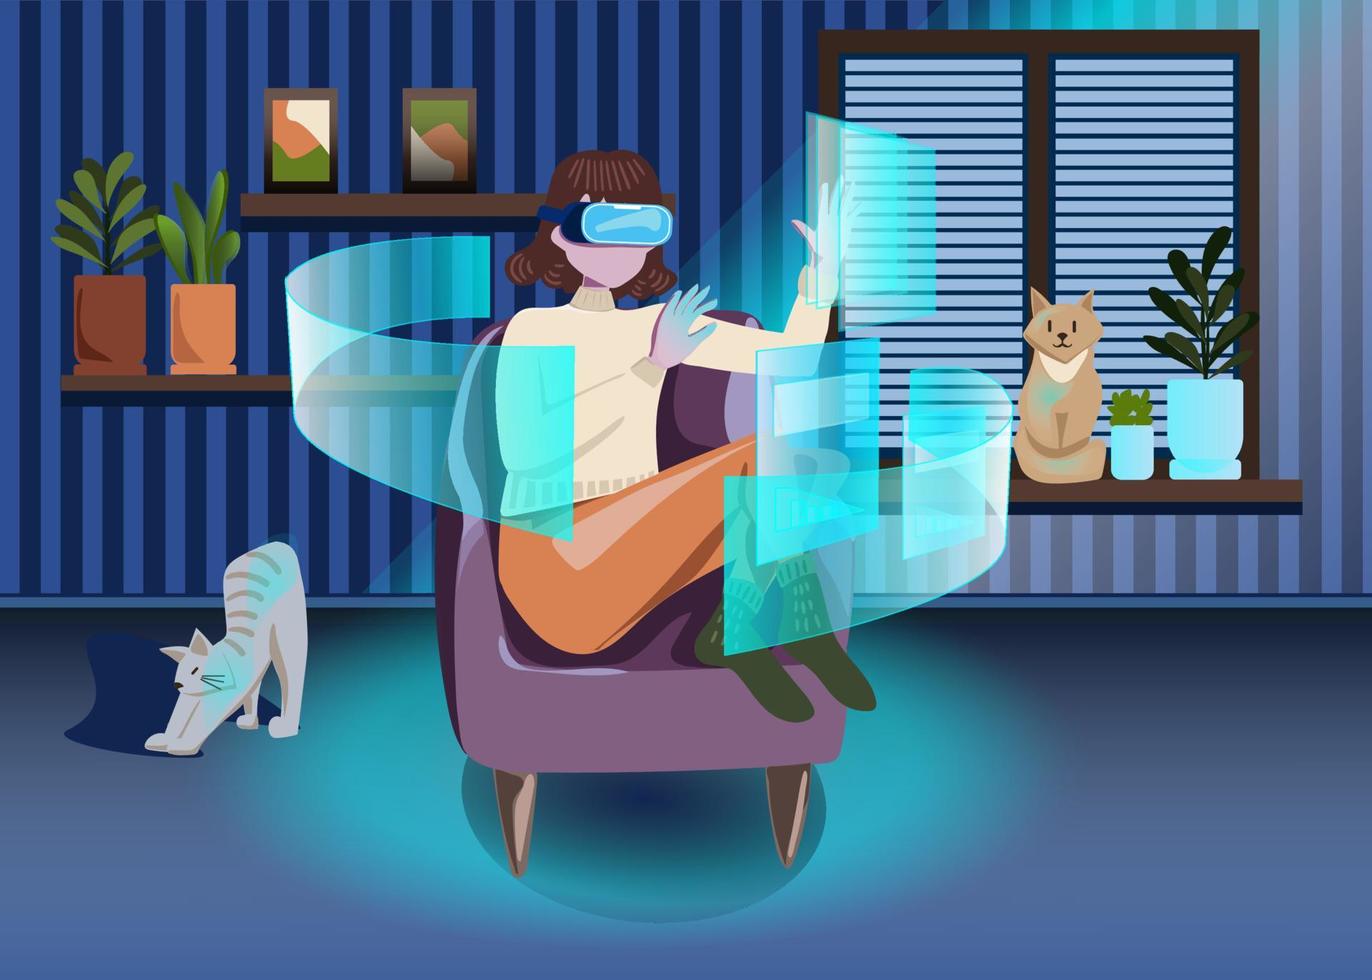 technologie du cyber-monde numérique métaverse, femme tenant des lunettes de réalité virtuelle entourées de données d'hologramme 3d d'interface futuriste, femme dans une pièce confortable avec des chats et des plantes. illustration vectorielle. vecteur